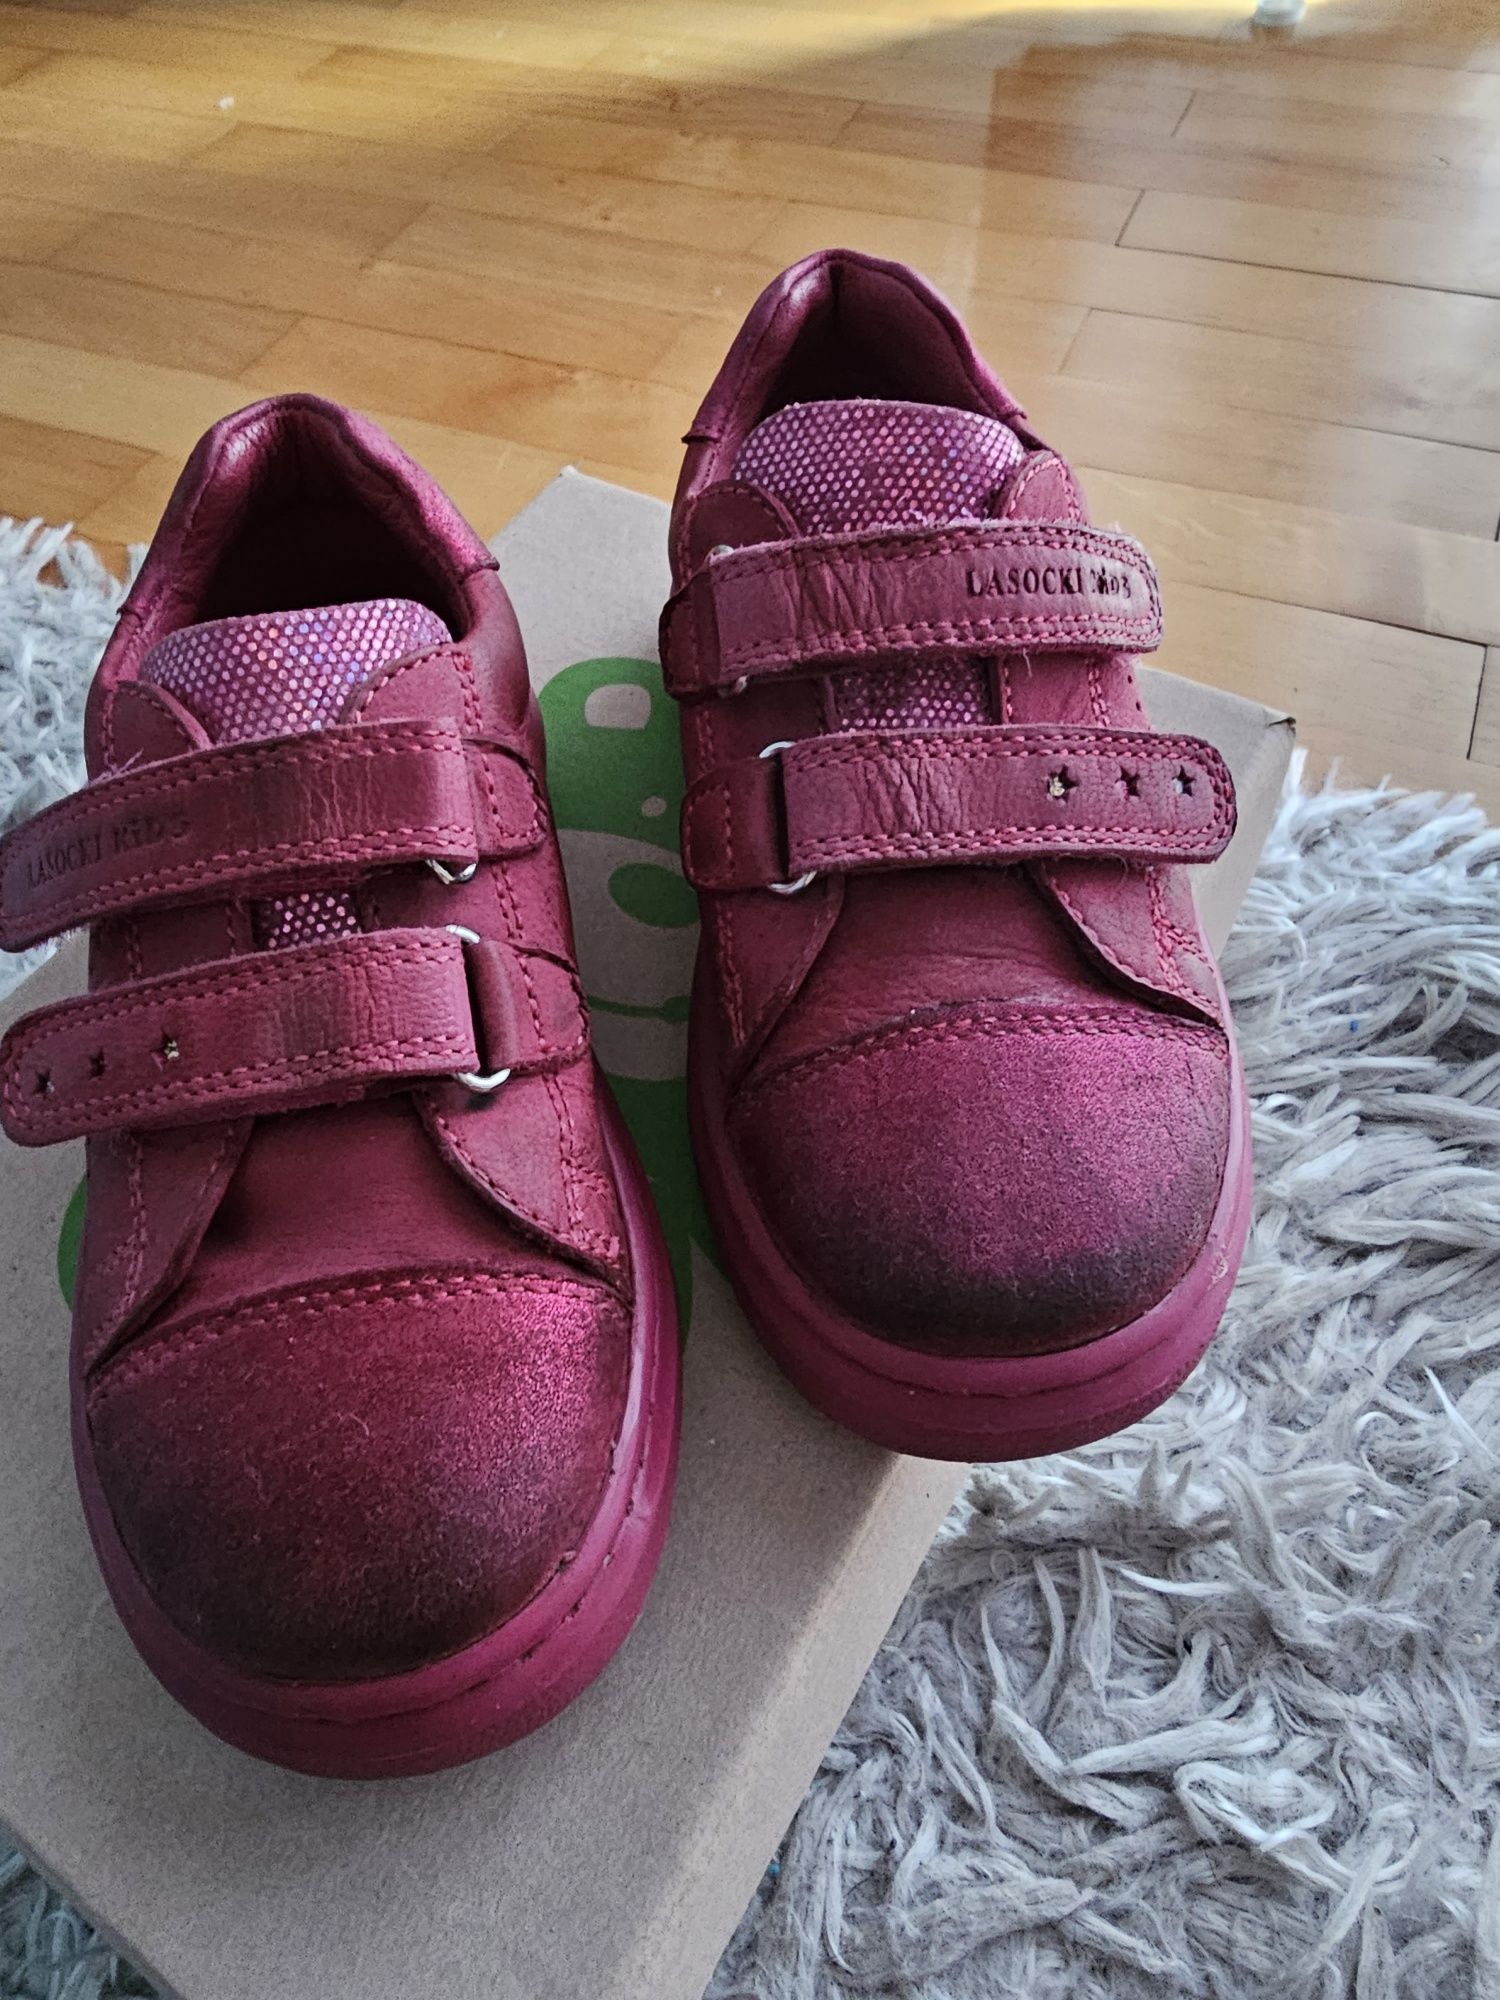 Buty dla dziewczynki Lasocki różowe skóra naturalna rozmiar 25